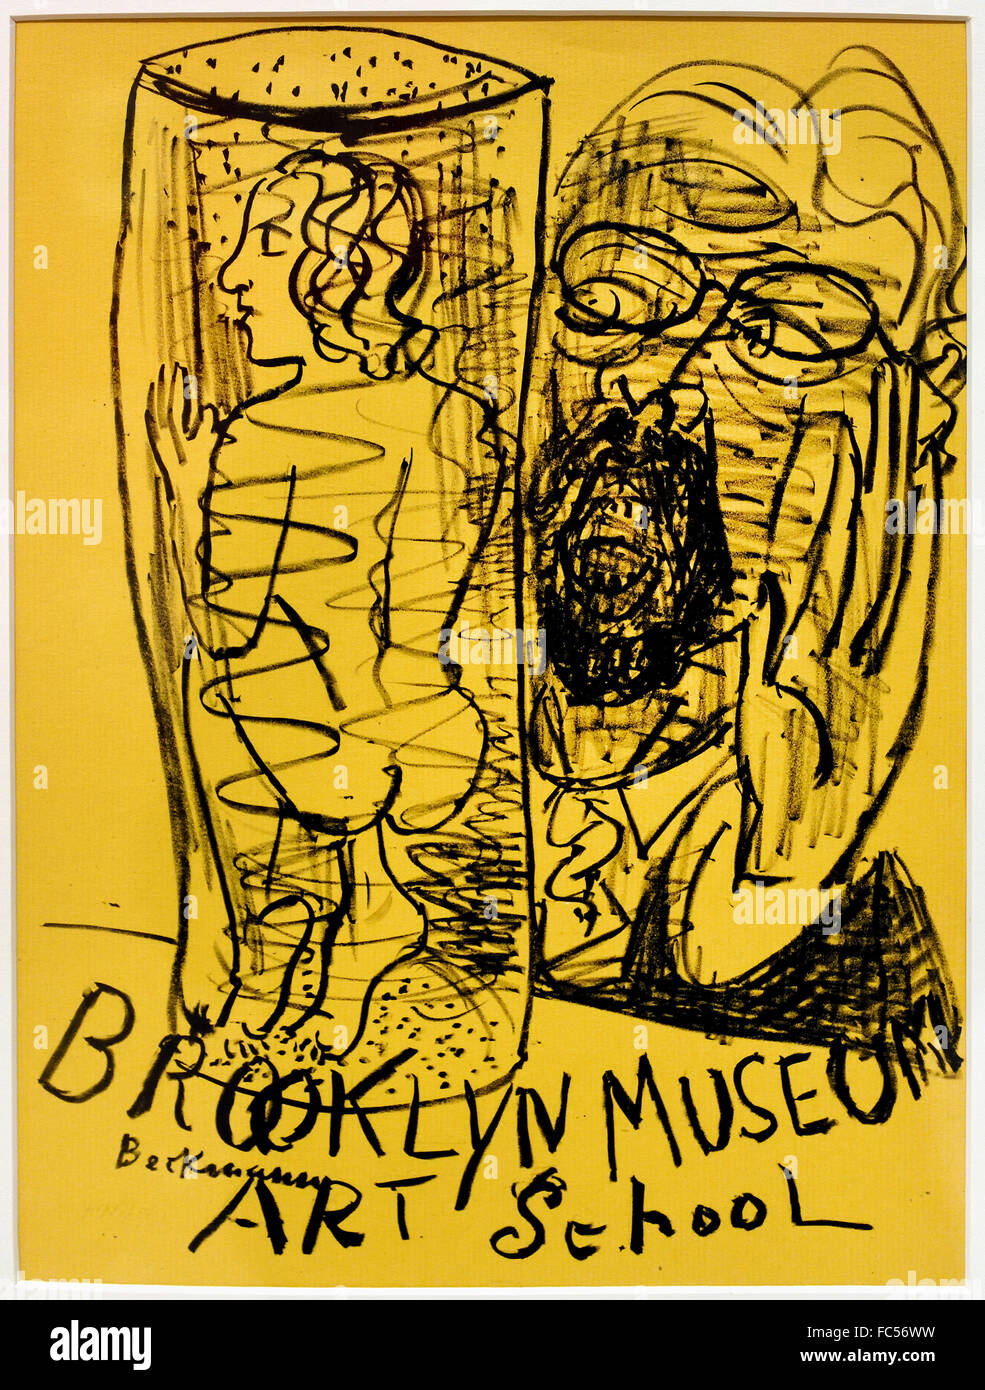 Brooklyn Museum Art School 1950 Max Beckmann 1884-1950 Deutsch Deutschland Stockfoto